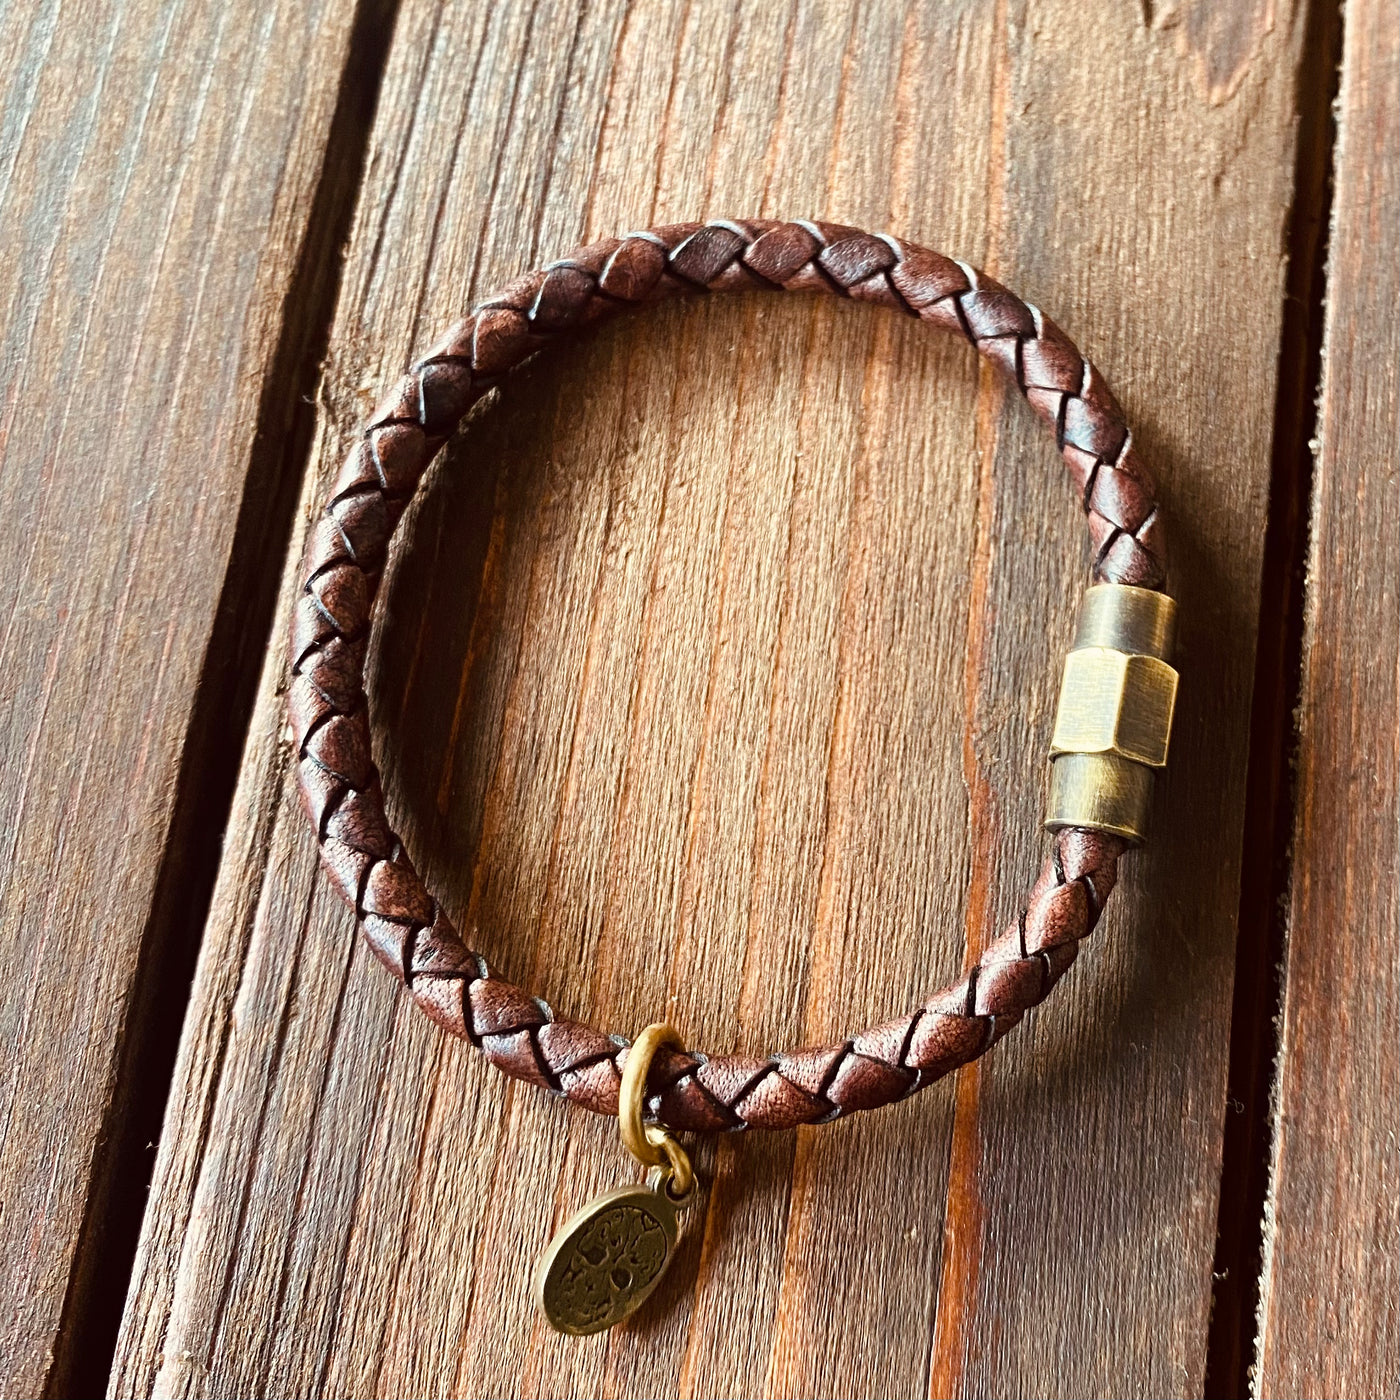 Bracelet - Leather bracelet